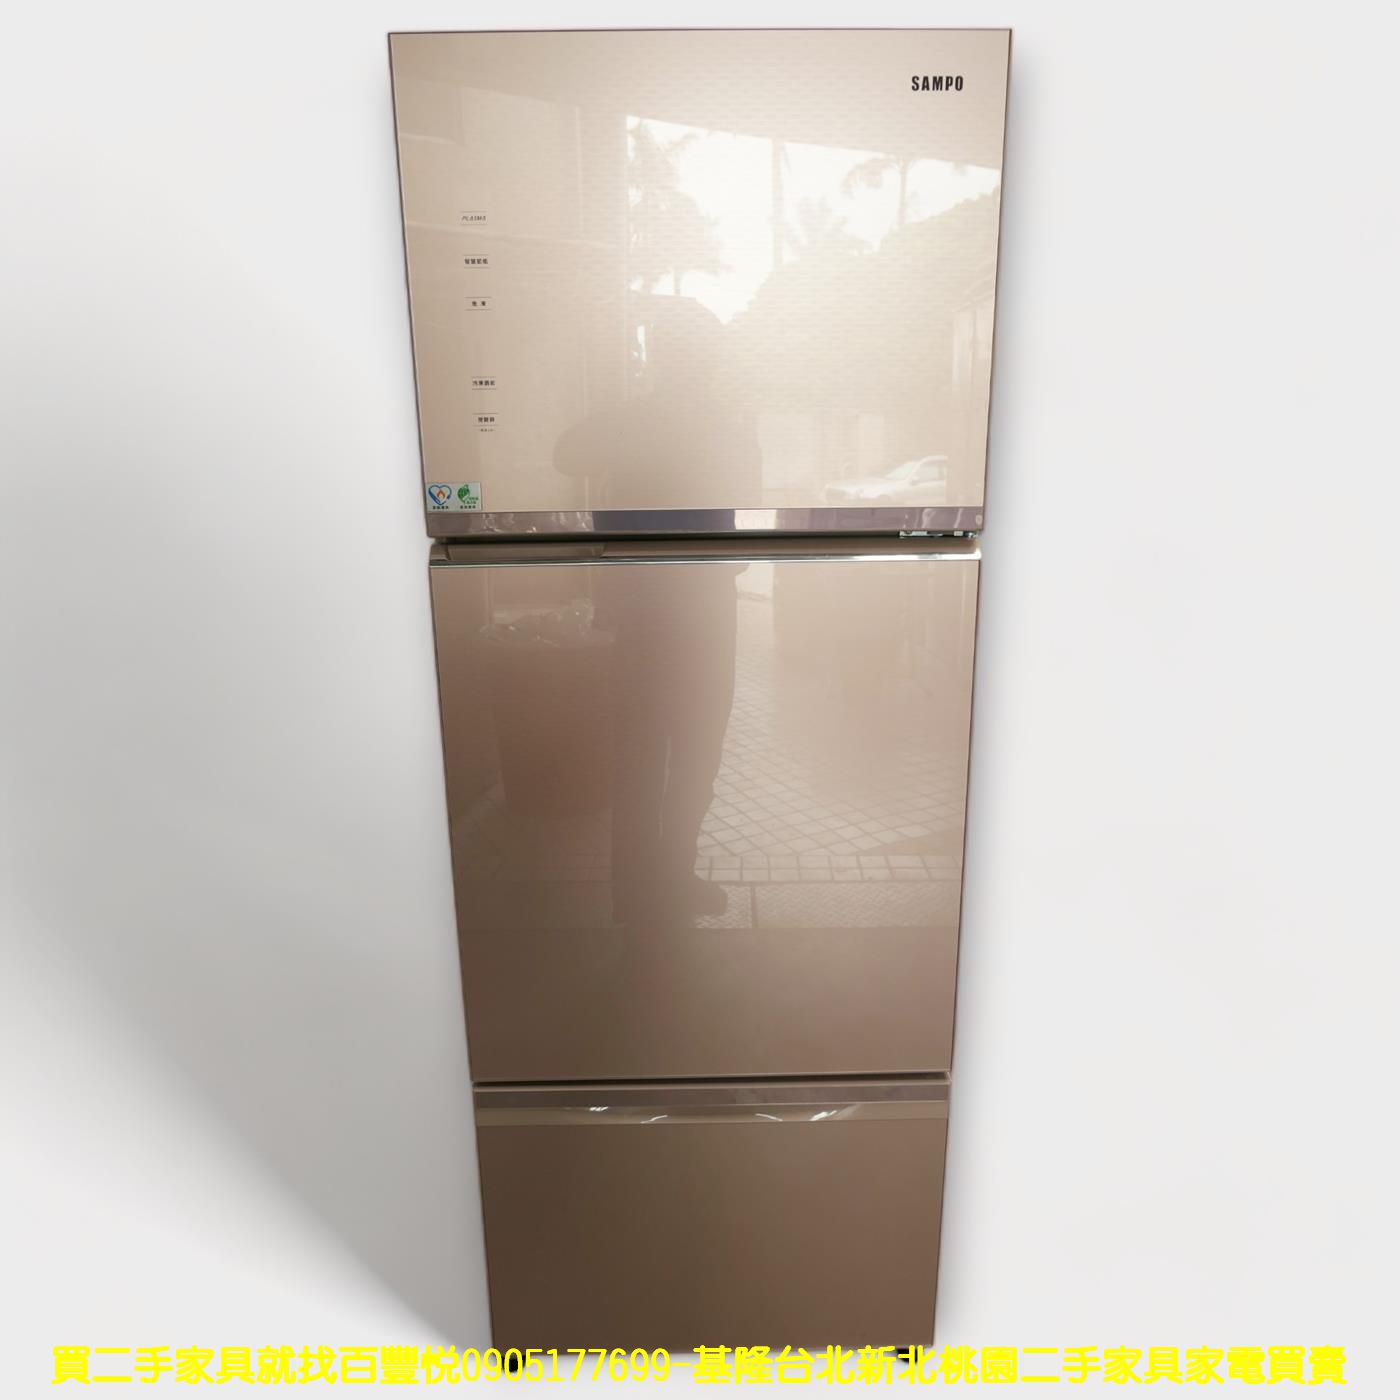 二手冰箱 聲寶 455公升 變頻一級 三門冰箱 大家電 中古家電 中古電器